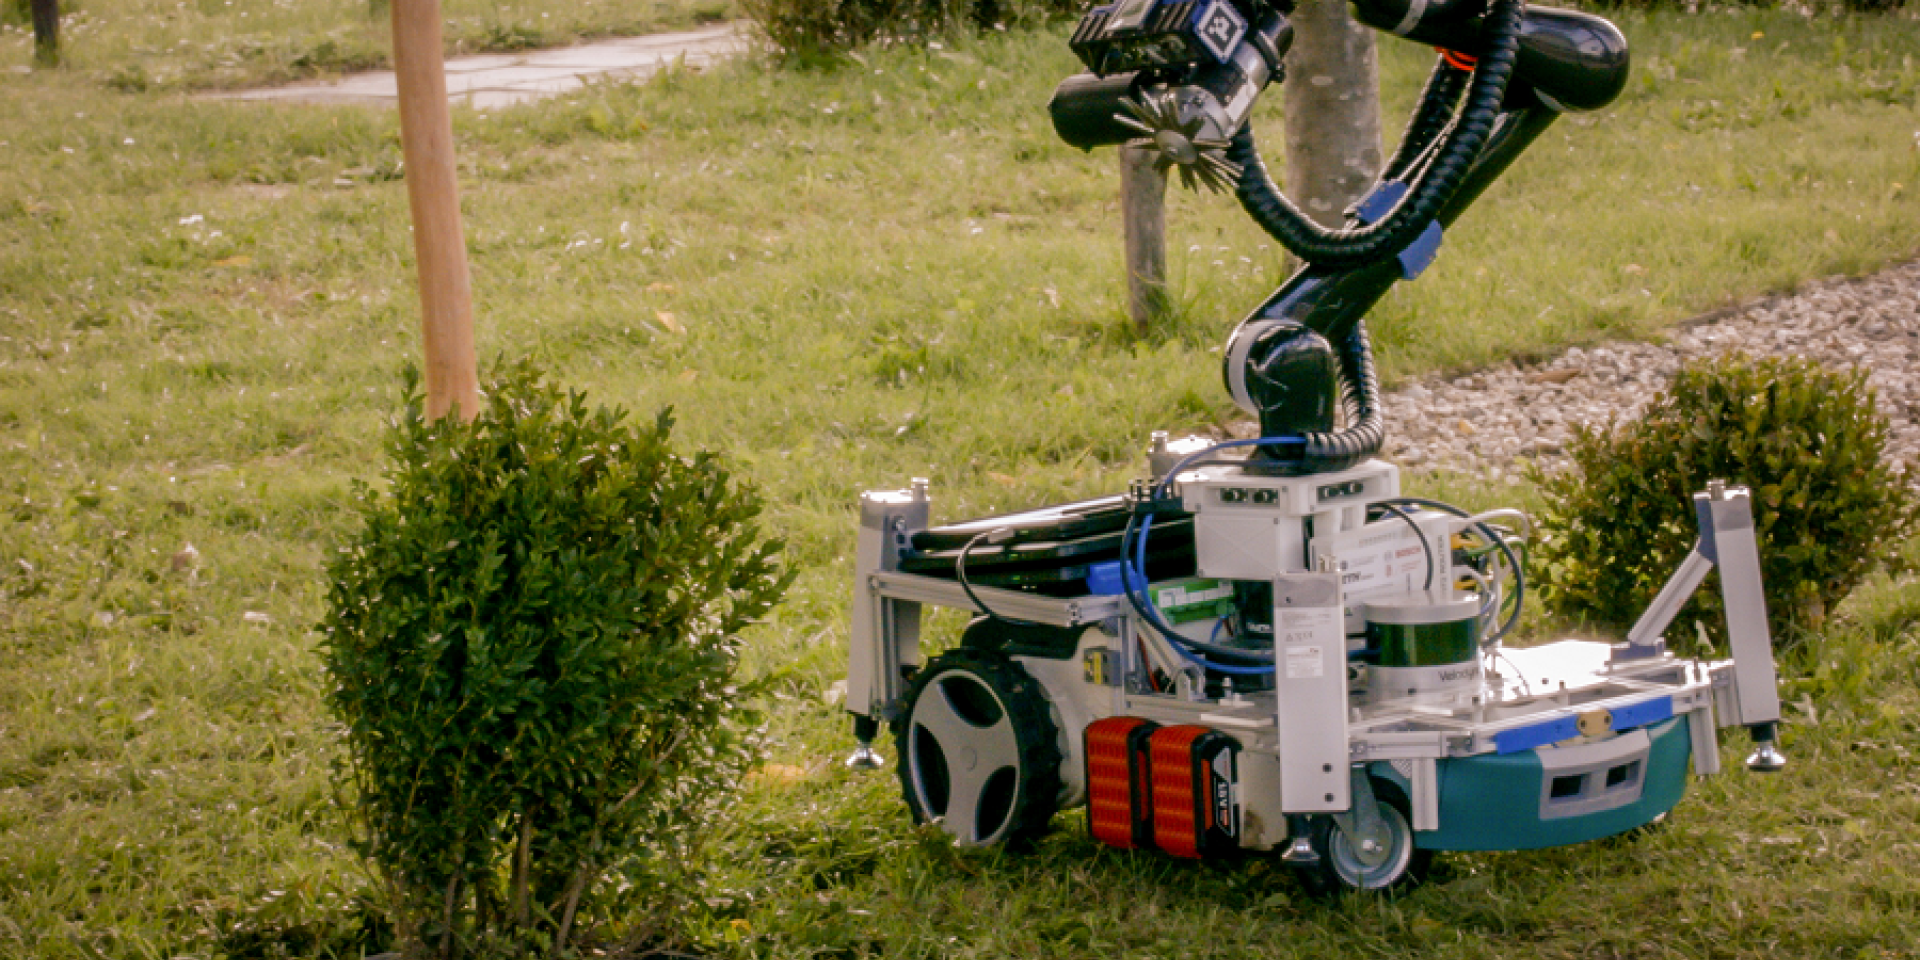 Trimbot robot trimming a bush